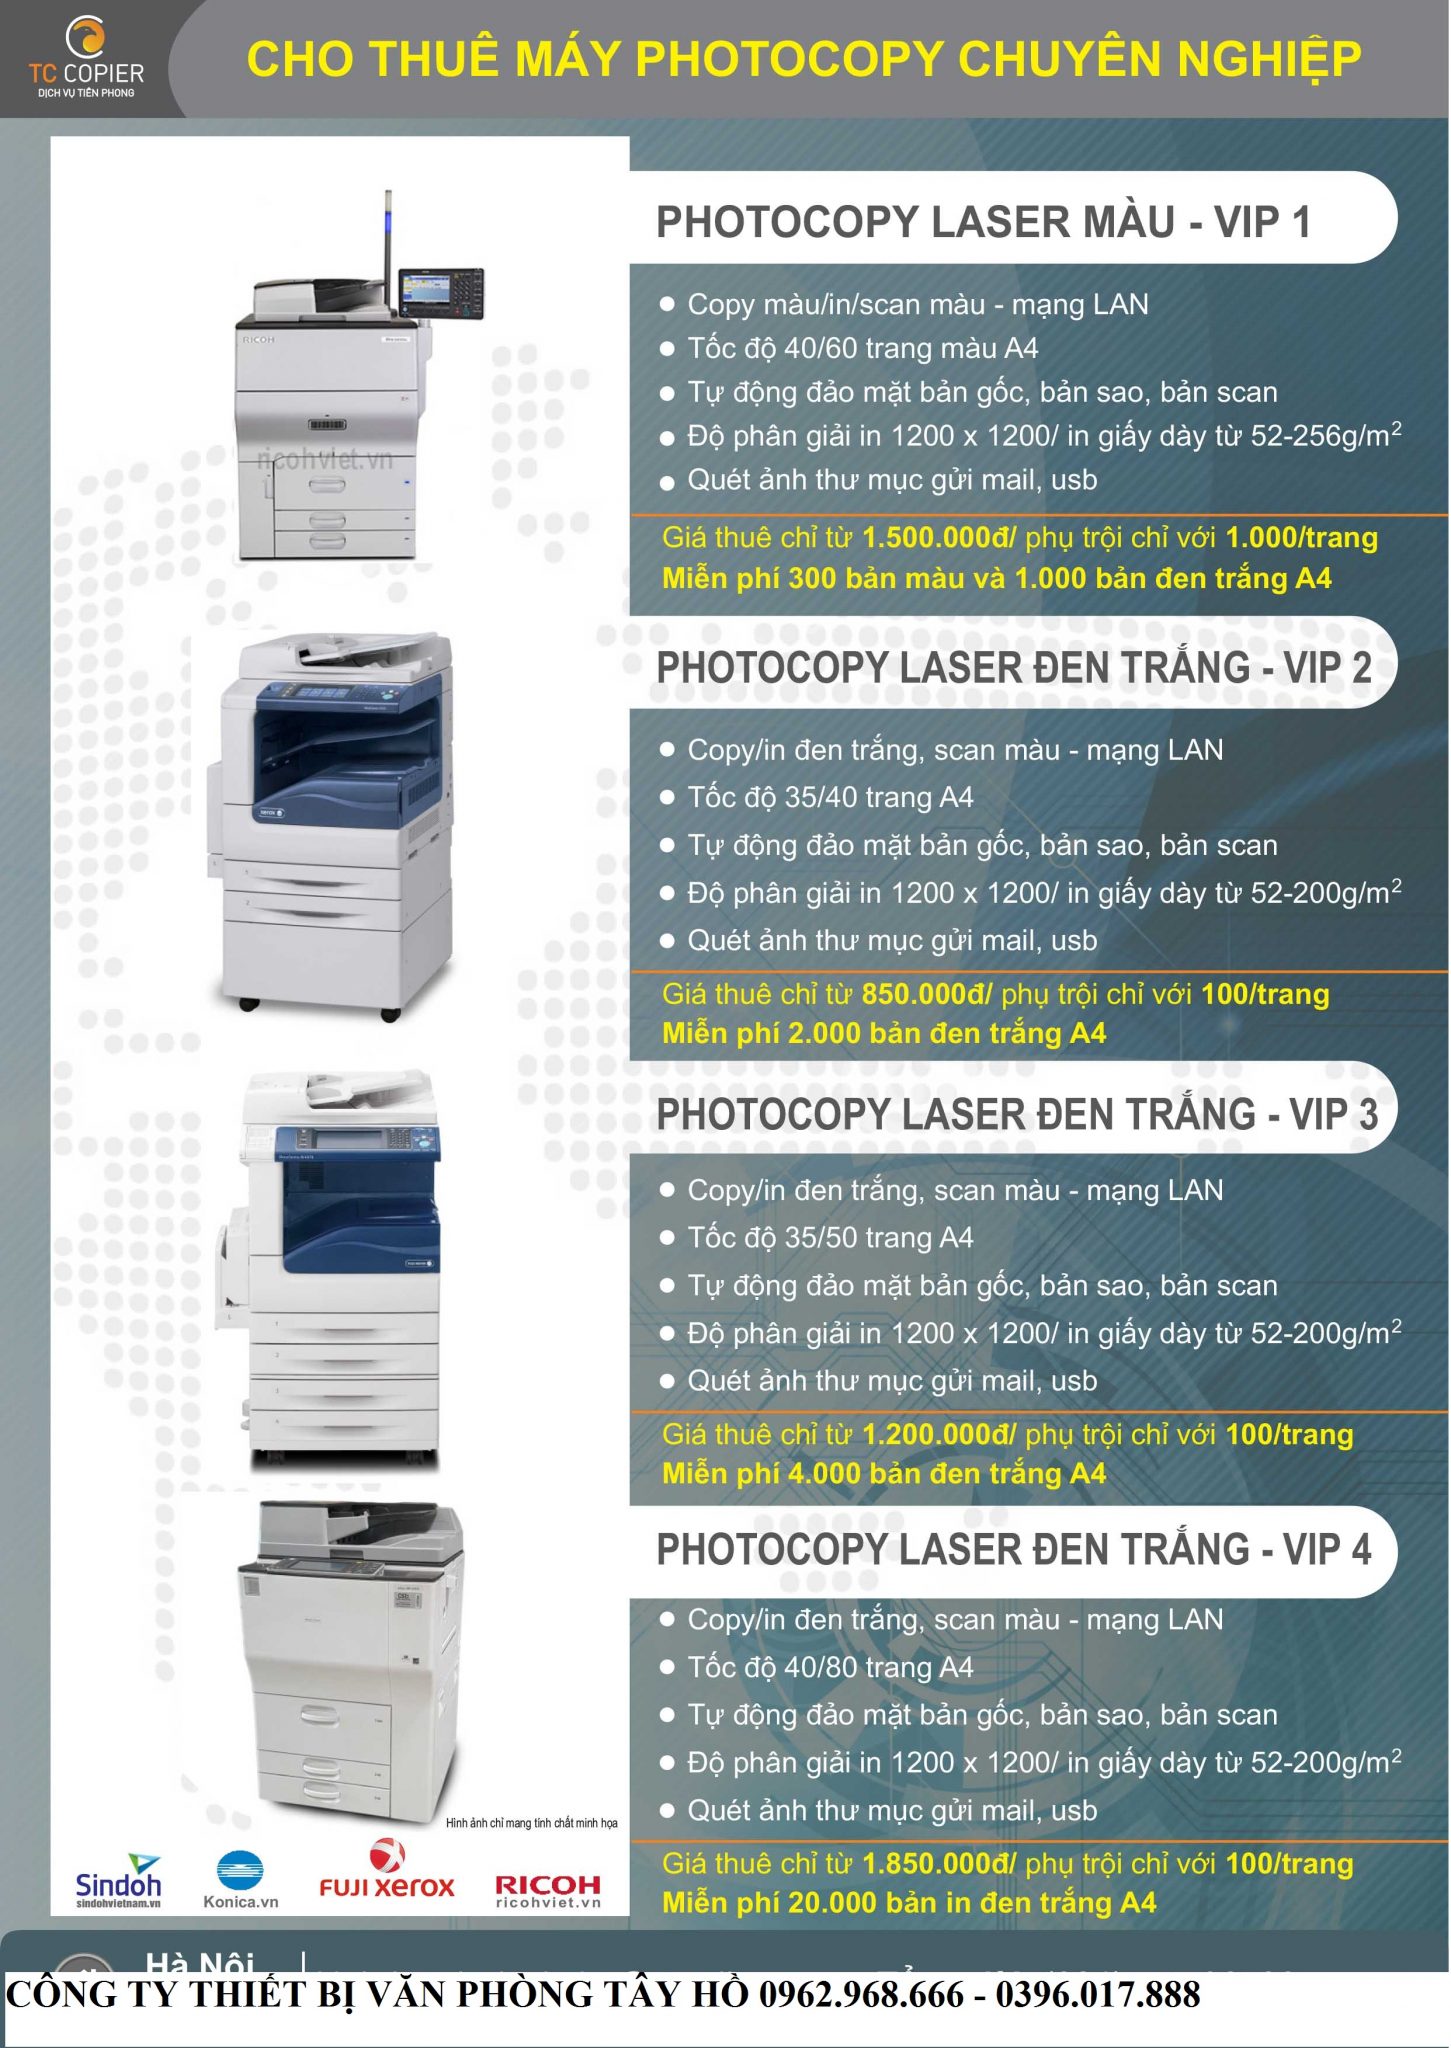 Cho thuê máy photocopy tại Đông Anh